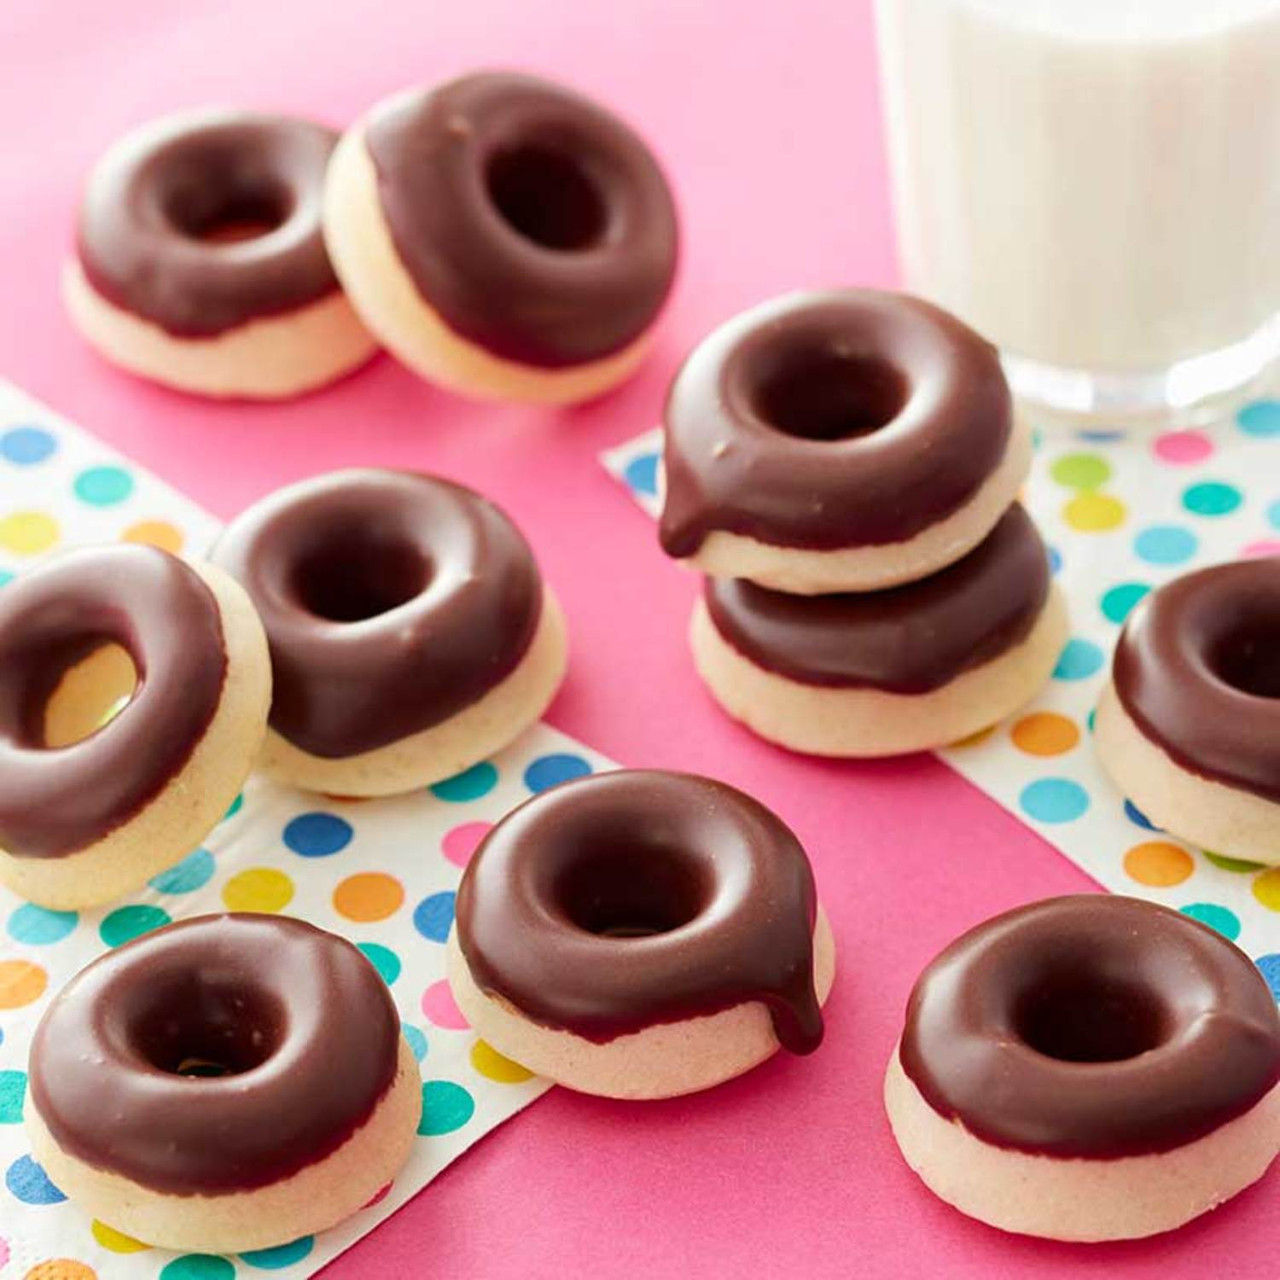 Mini Baked Donuts with Vanilla Glaze